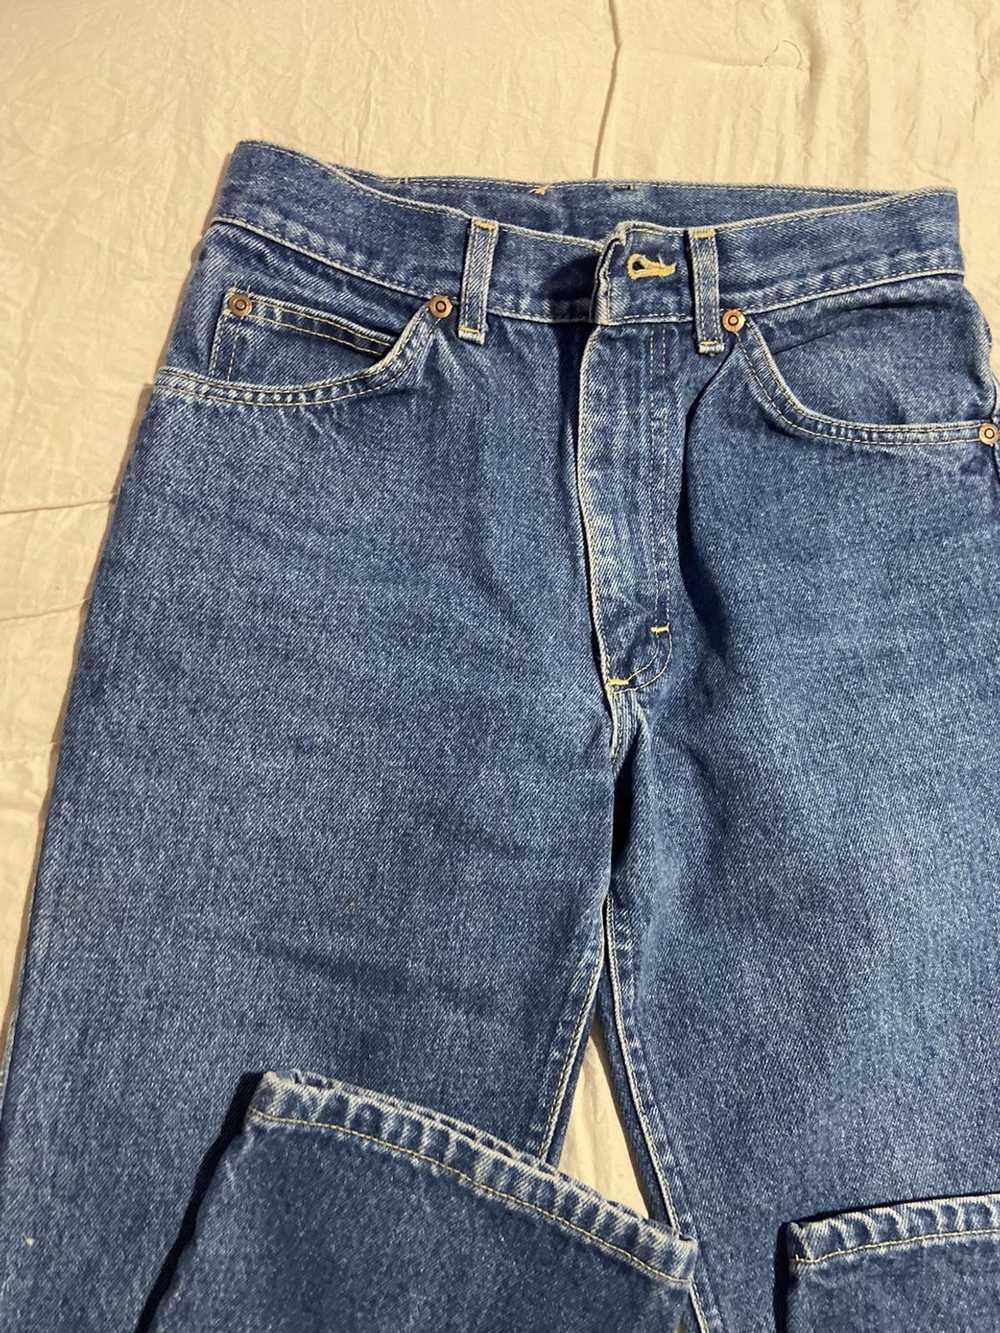 Lee Vintage Lee Jeans Blue Denim - image 4